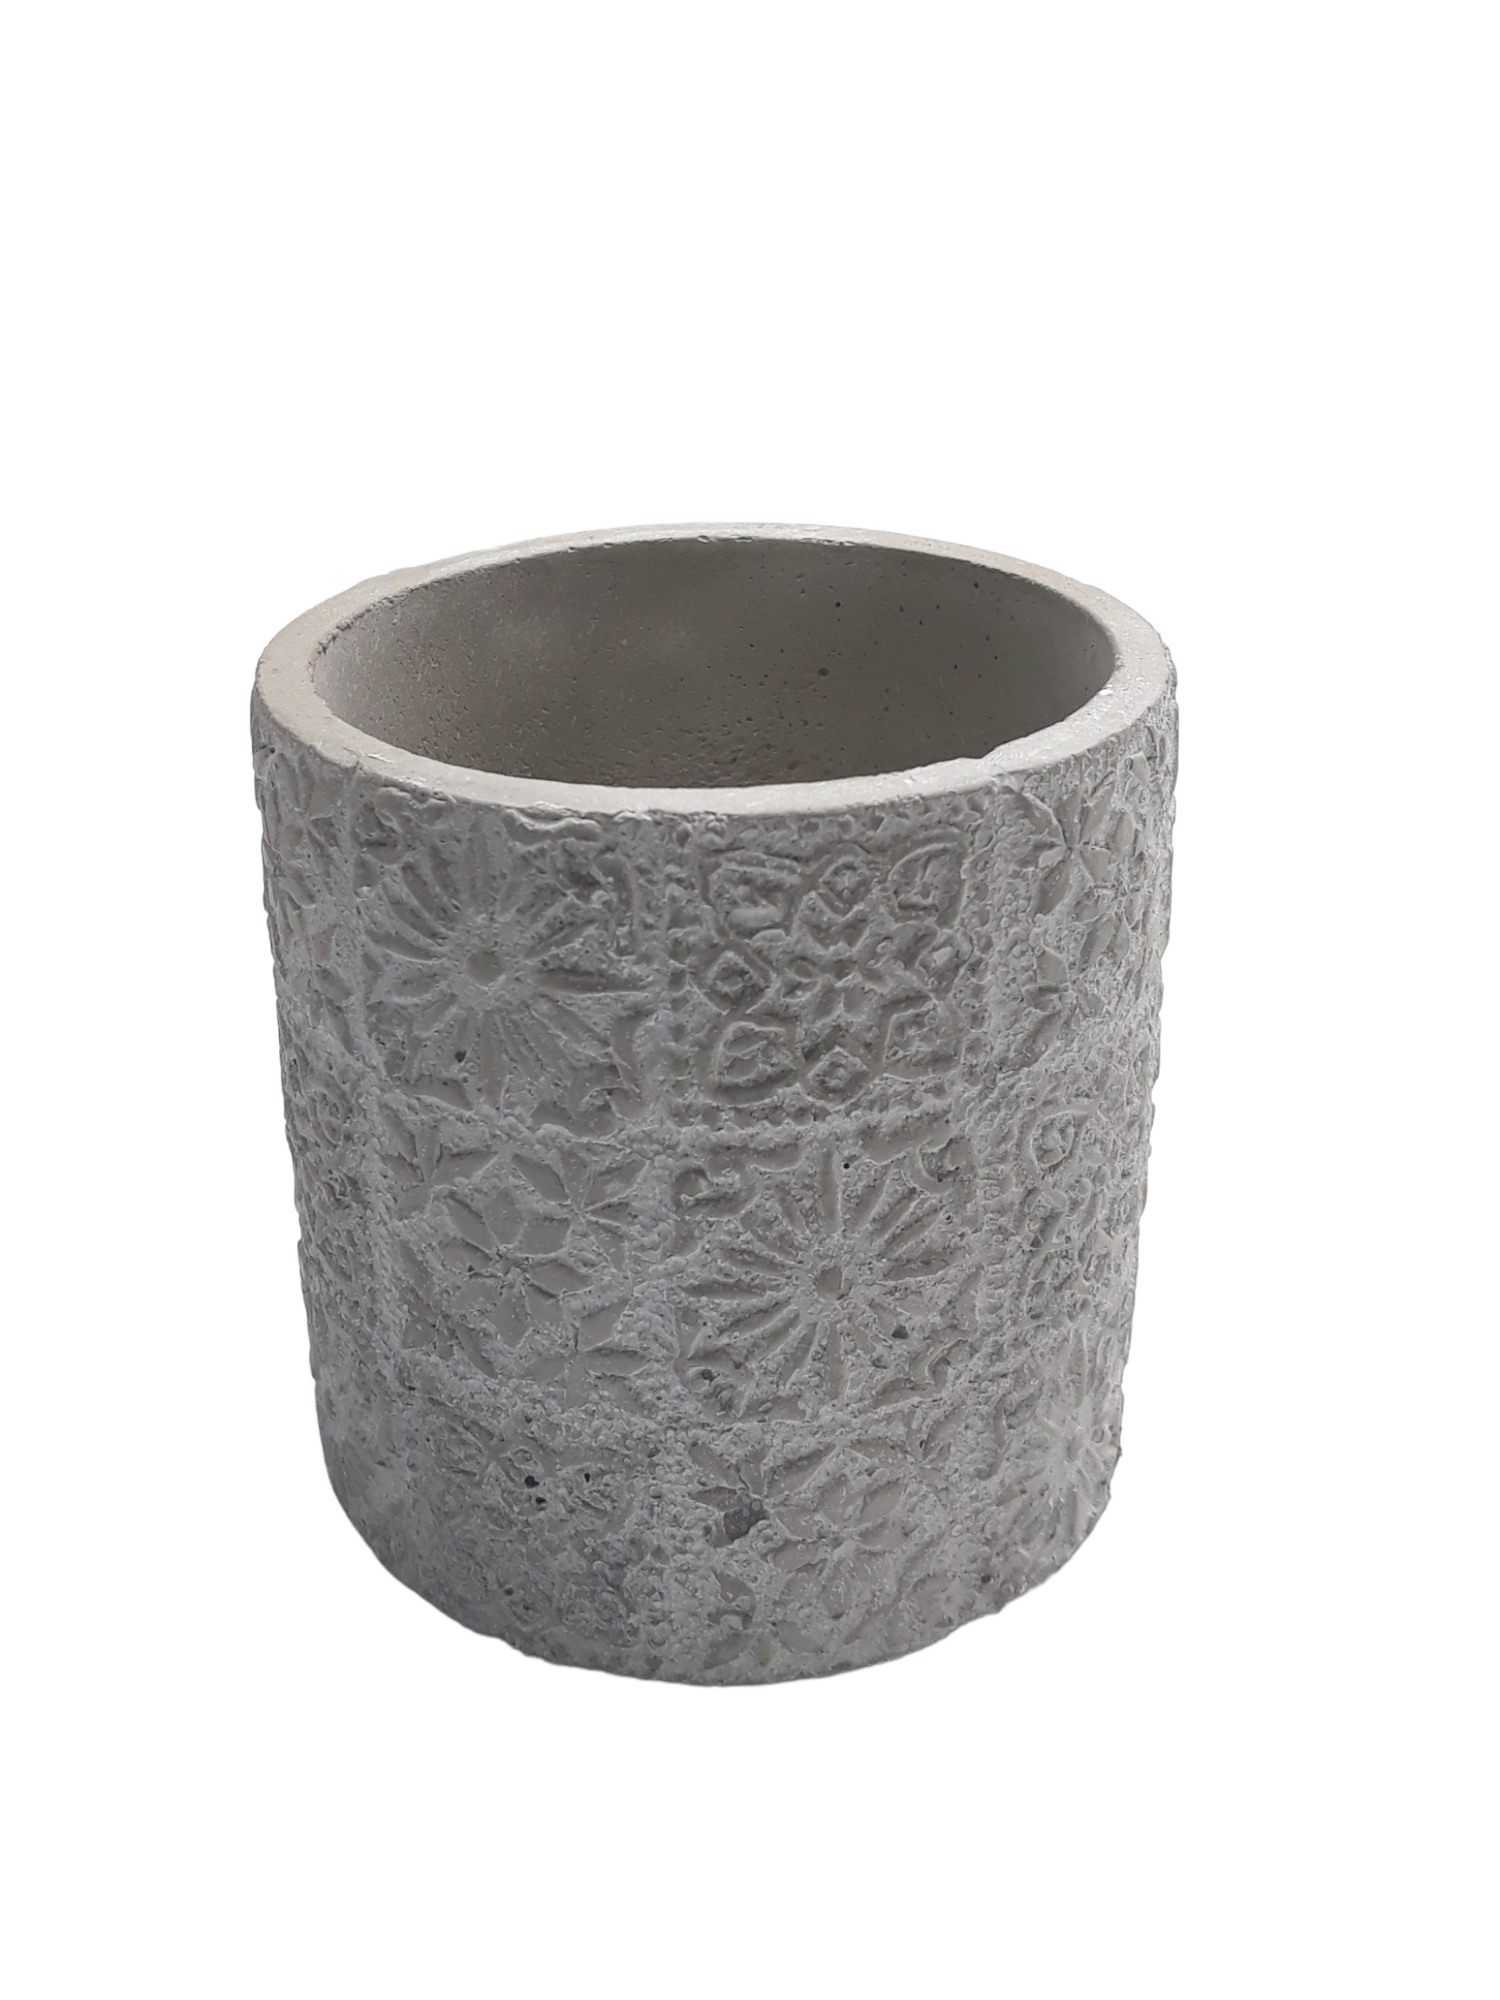 Michael Carr Designs® 3.5" Floral Patchwork Pot - Light Gray